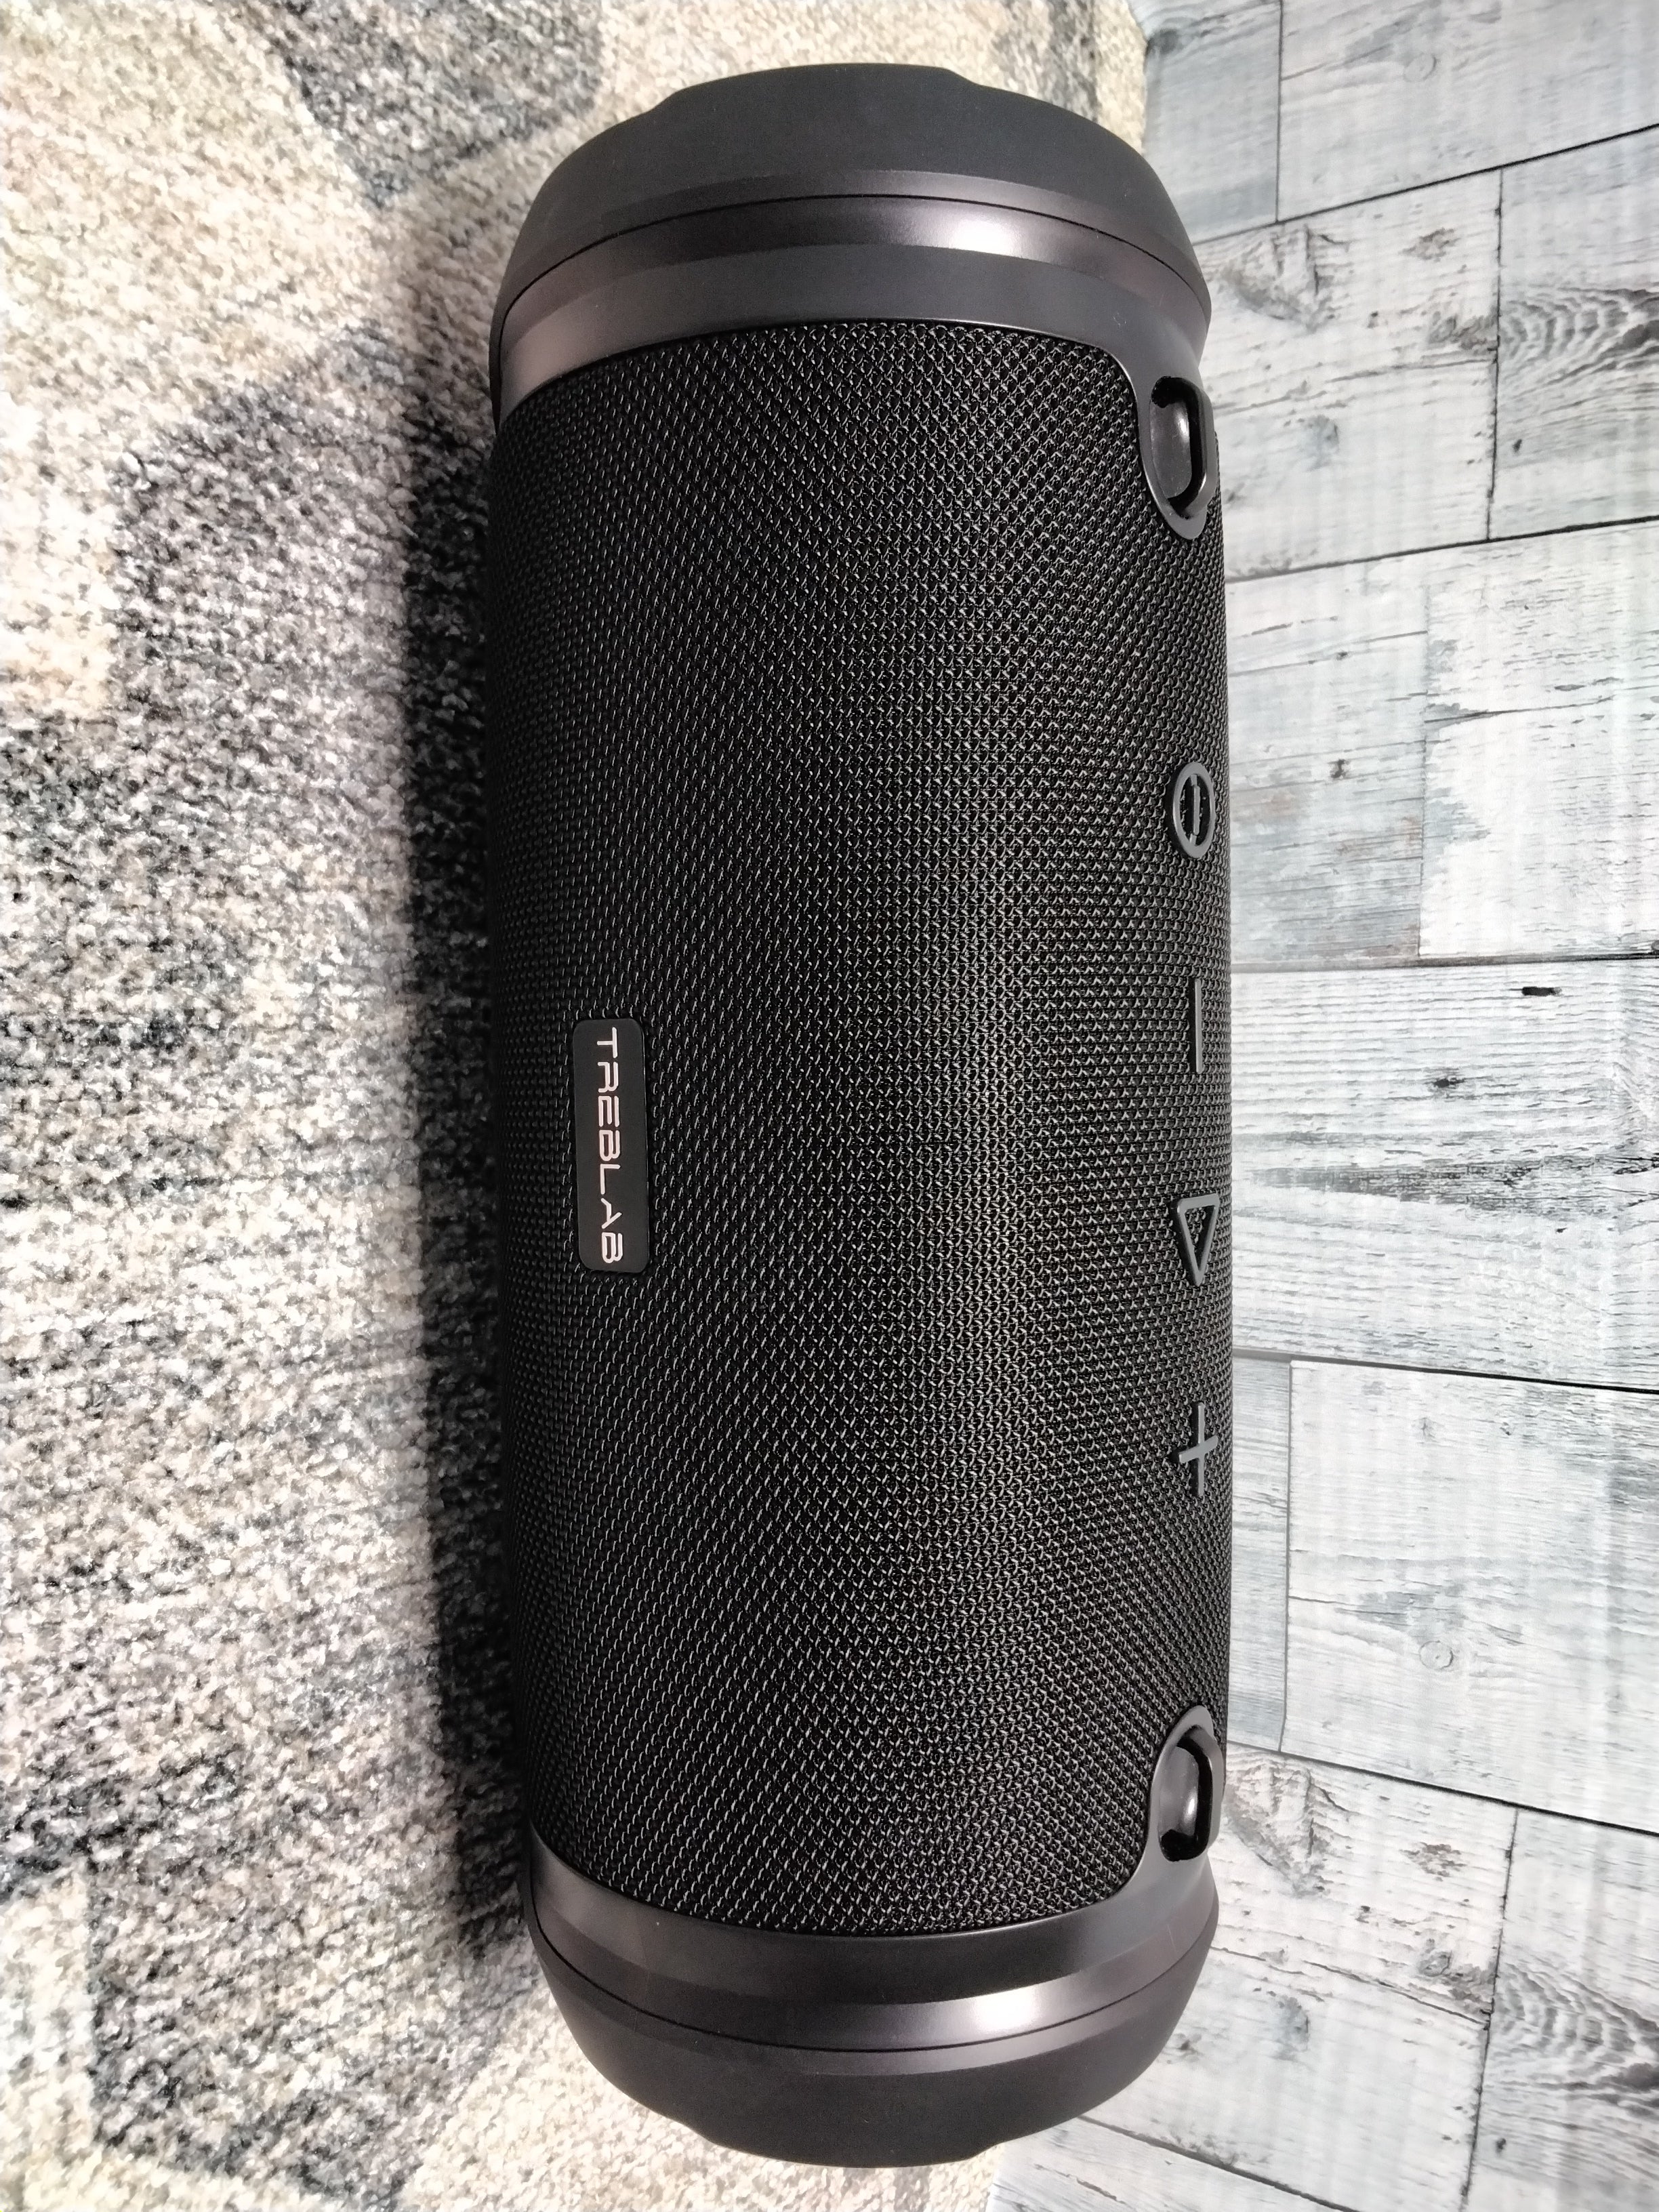 TREBLAB HD Max Waterproof Bluetooth Speaker with Deep Bass, Built-in Powerbank (7931530739950)